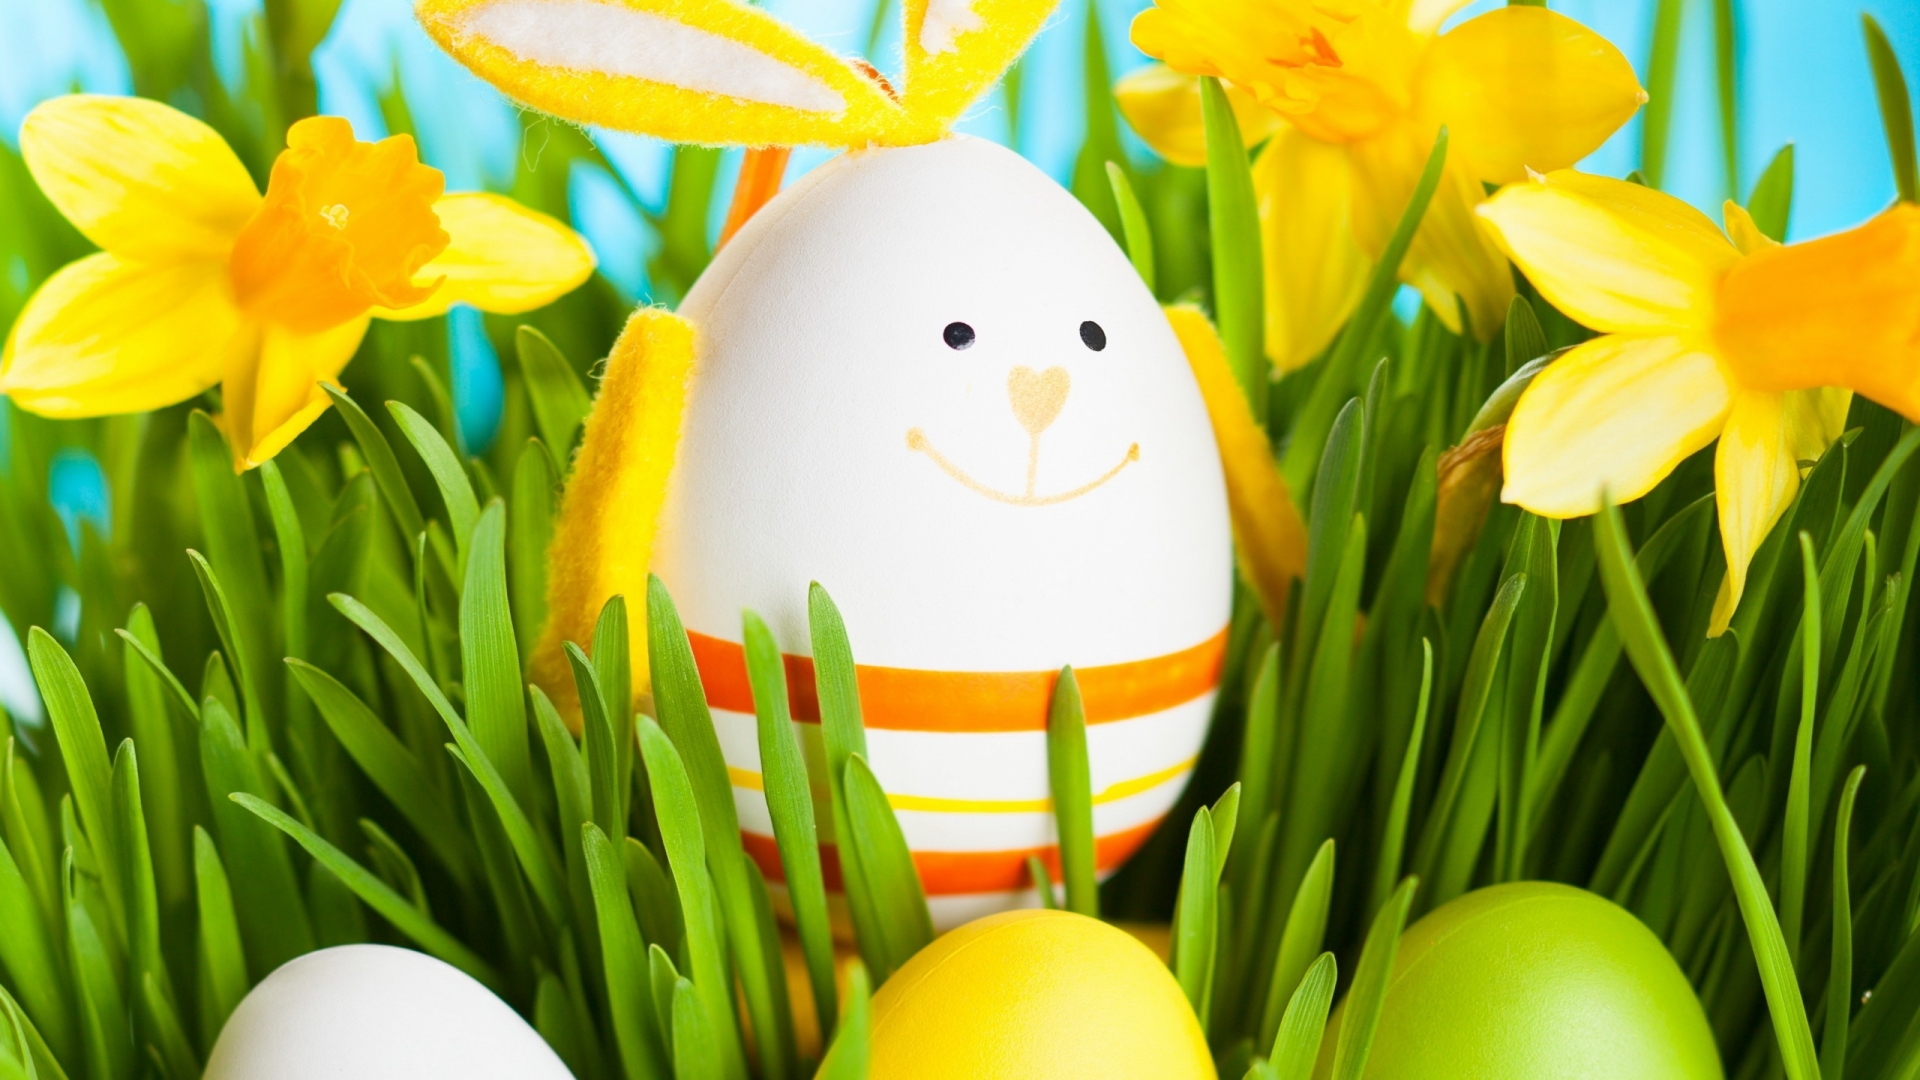 2014 Smiling Easter Egg for 1920 x 1080 HDTV 1080p resolution